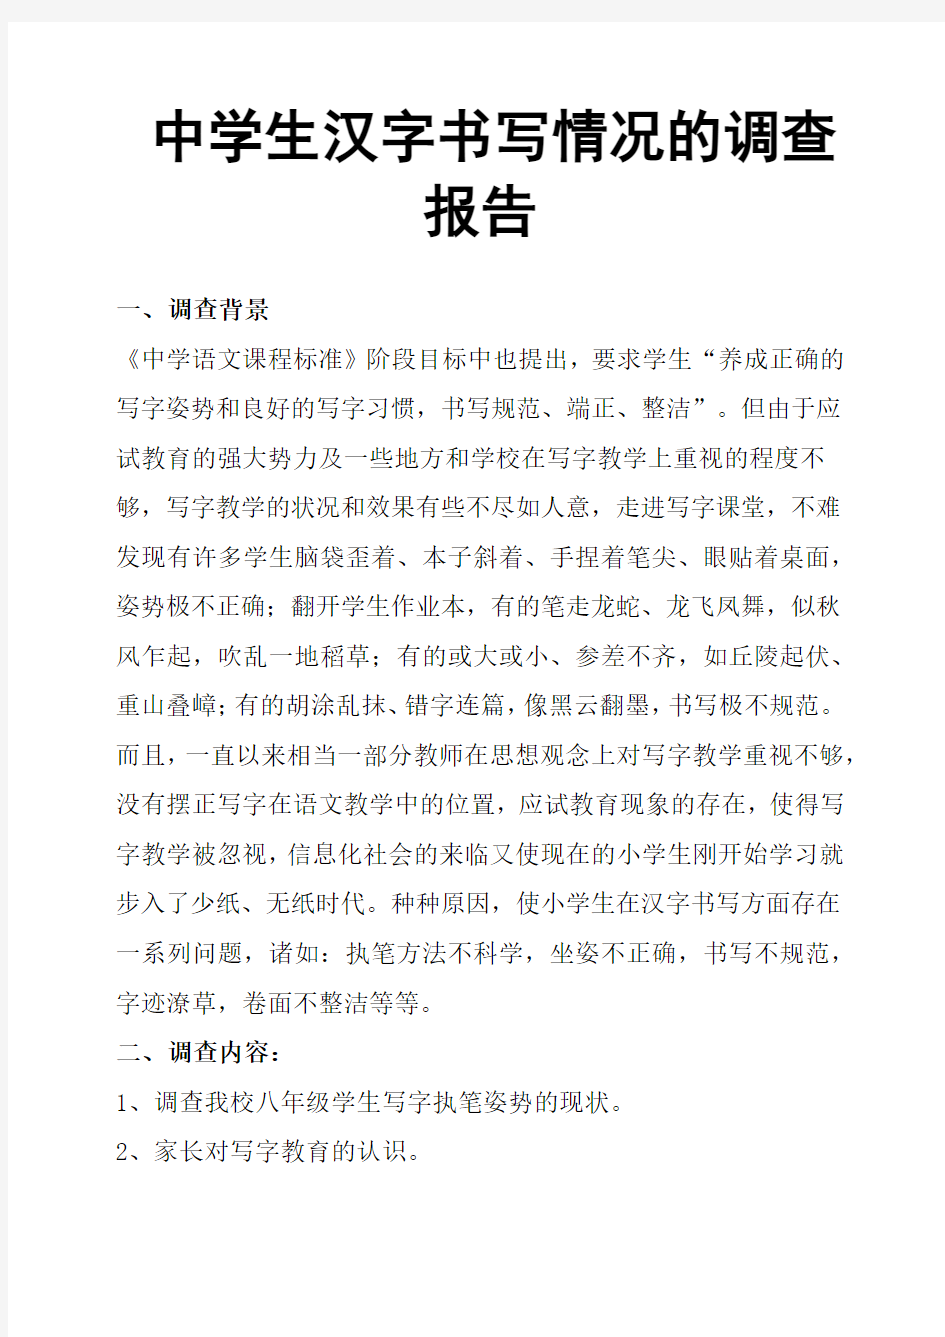 中学生汉字书写情况的调查报告